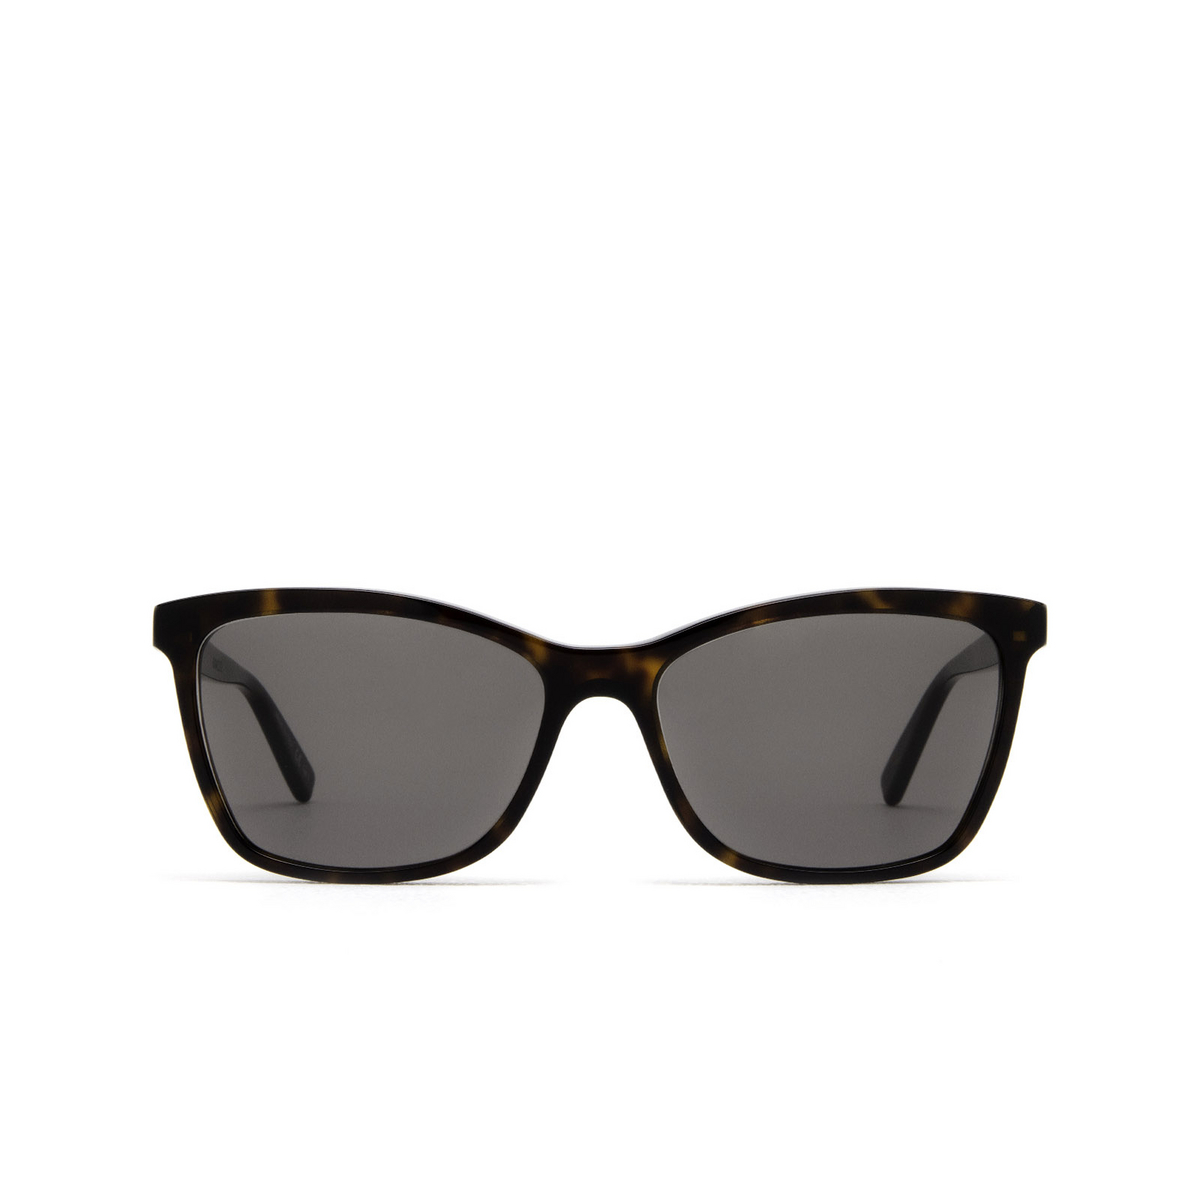 Saint Laurent® Cat-eye Sunglasses: SL 502 color Havana 002 - front view.